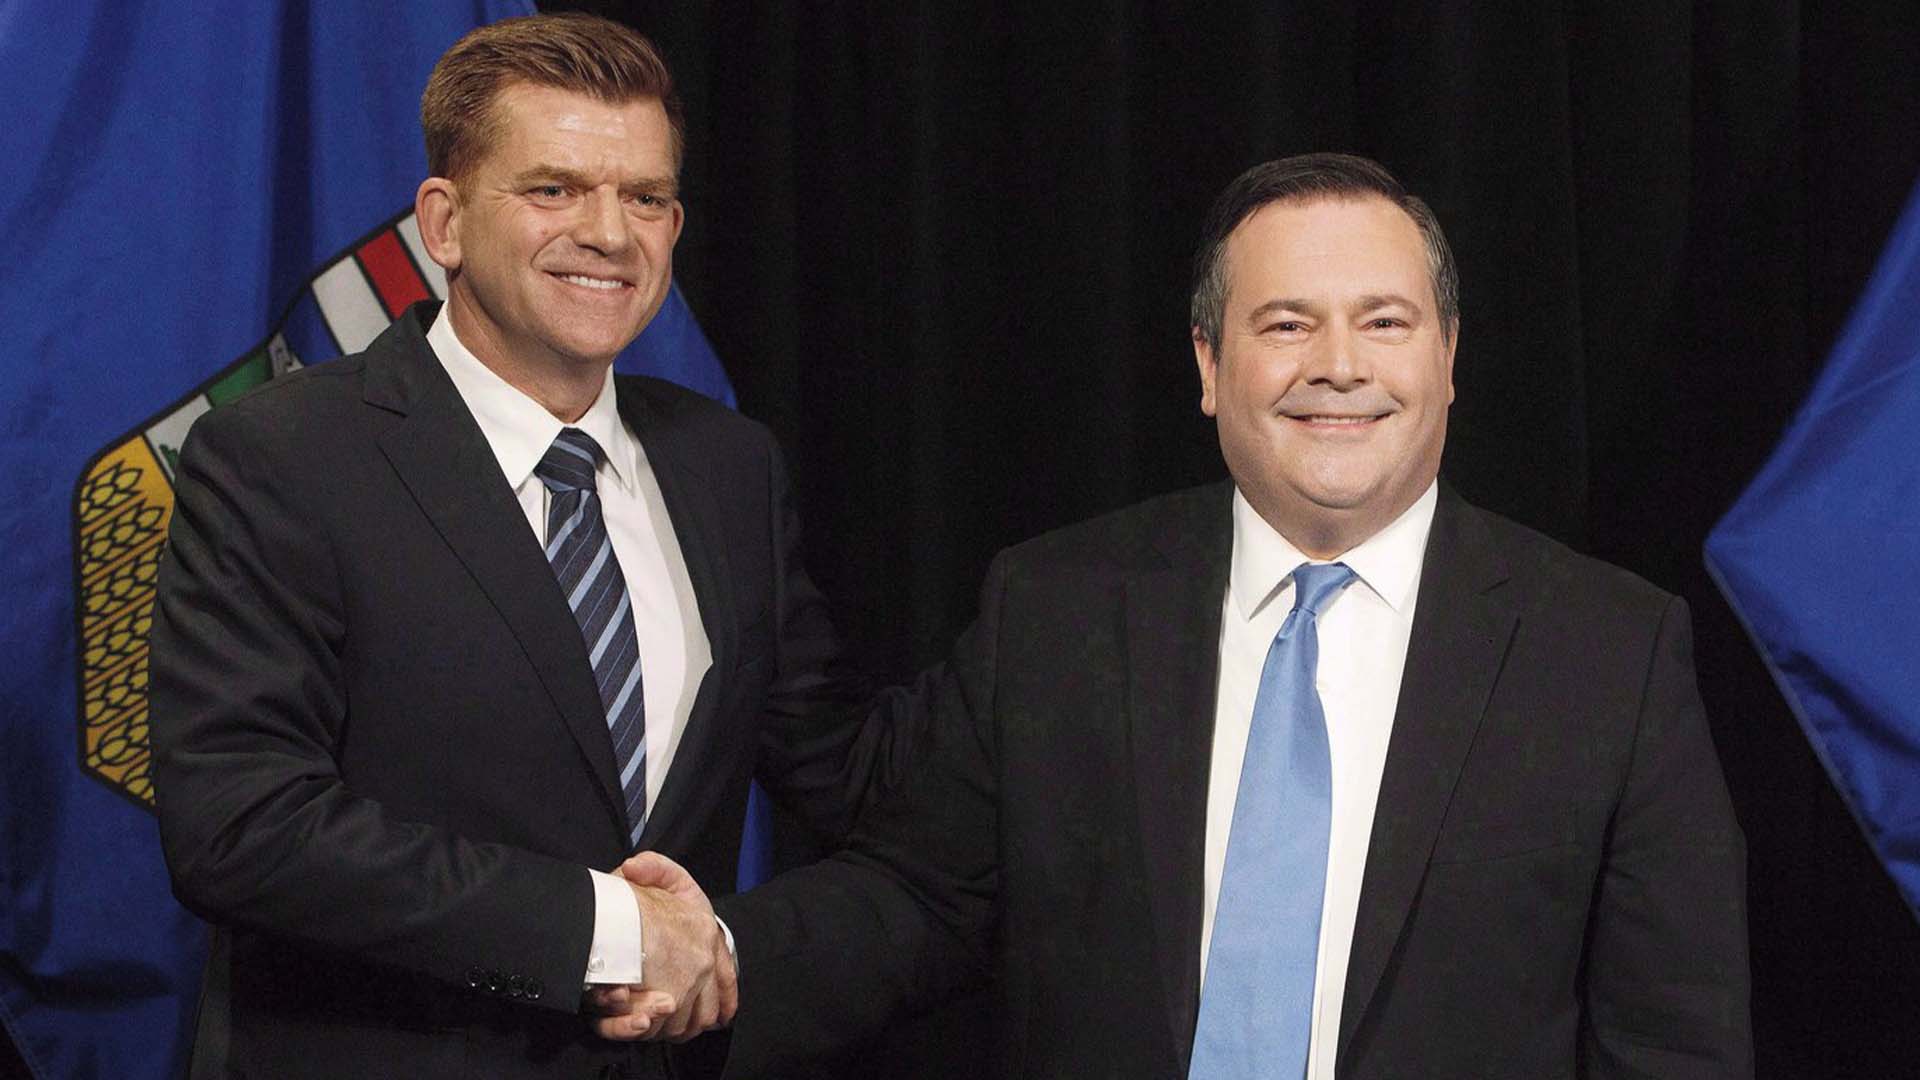 Le chef de l'Alberta Wildrose, Brian Jean, et le chef du PC de l'Alberta, Jason Kenney, se serrent la main après avoir annoncé un accord d'unité entre les deux partis à Edmonton le 18 mai 2017.